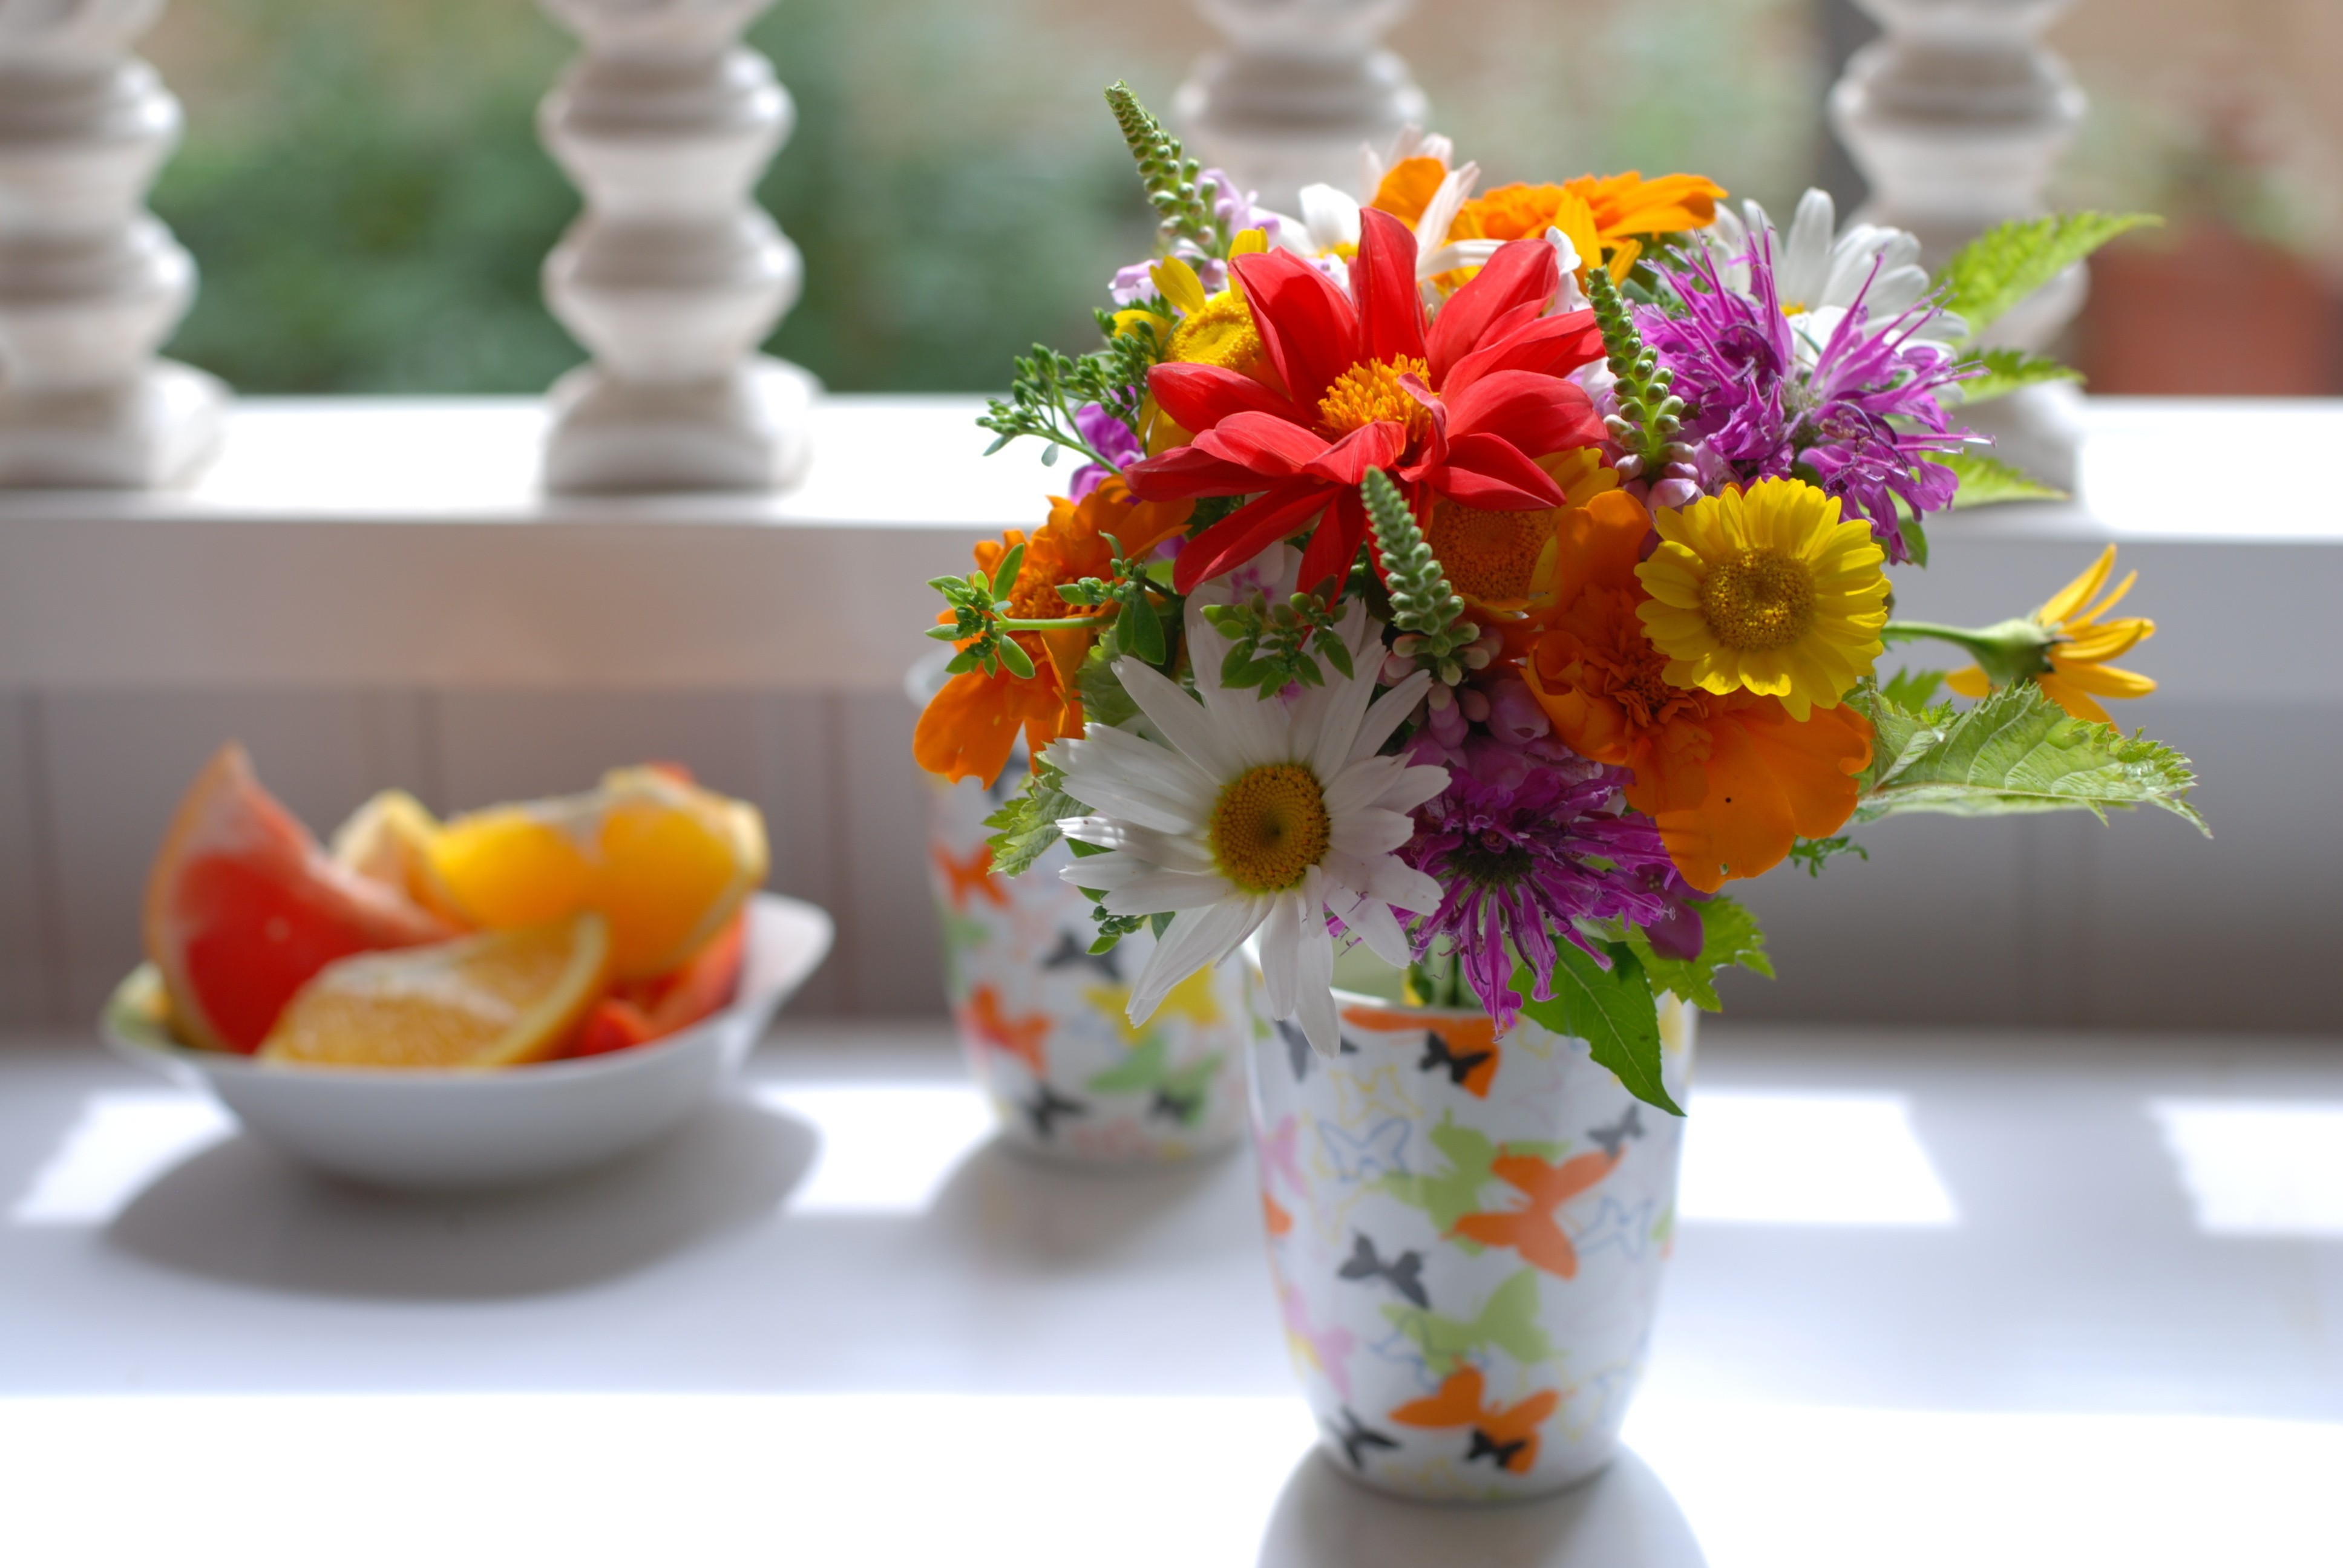 Image: Vase, bouquet, flowers, fruit, shade